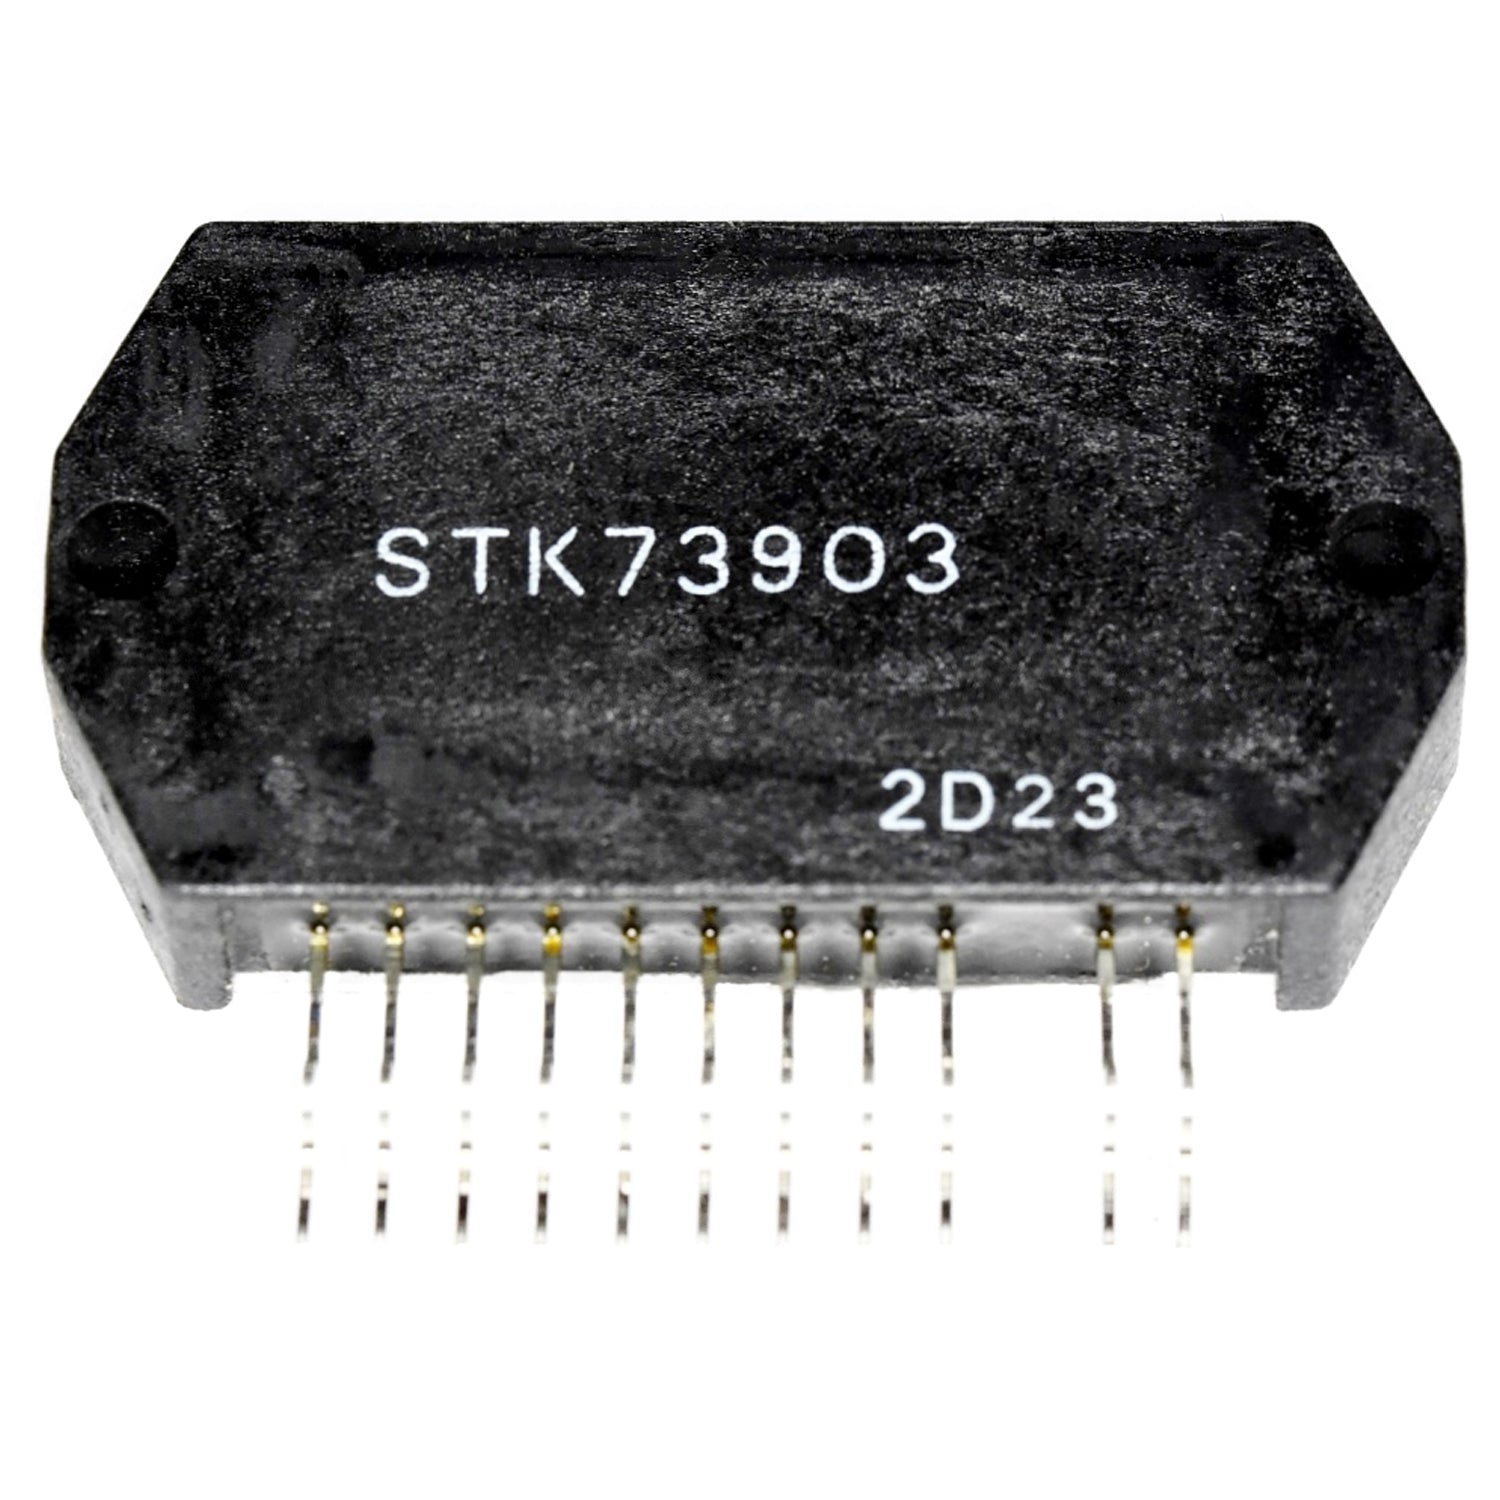 STK73903 IC SAN(ORI)